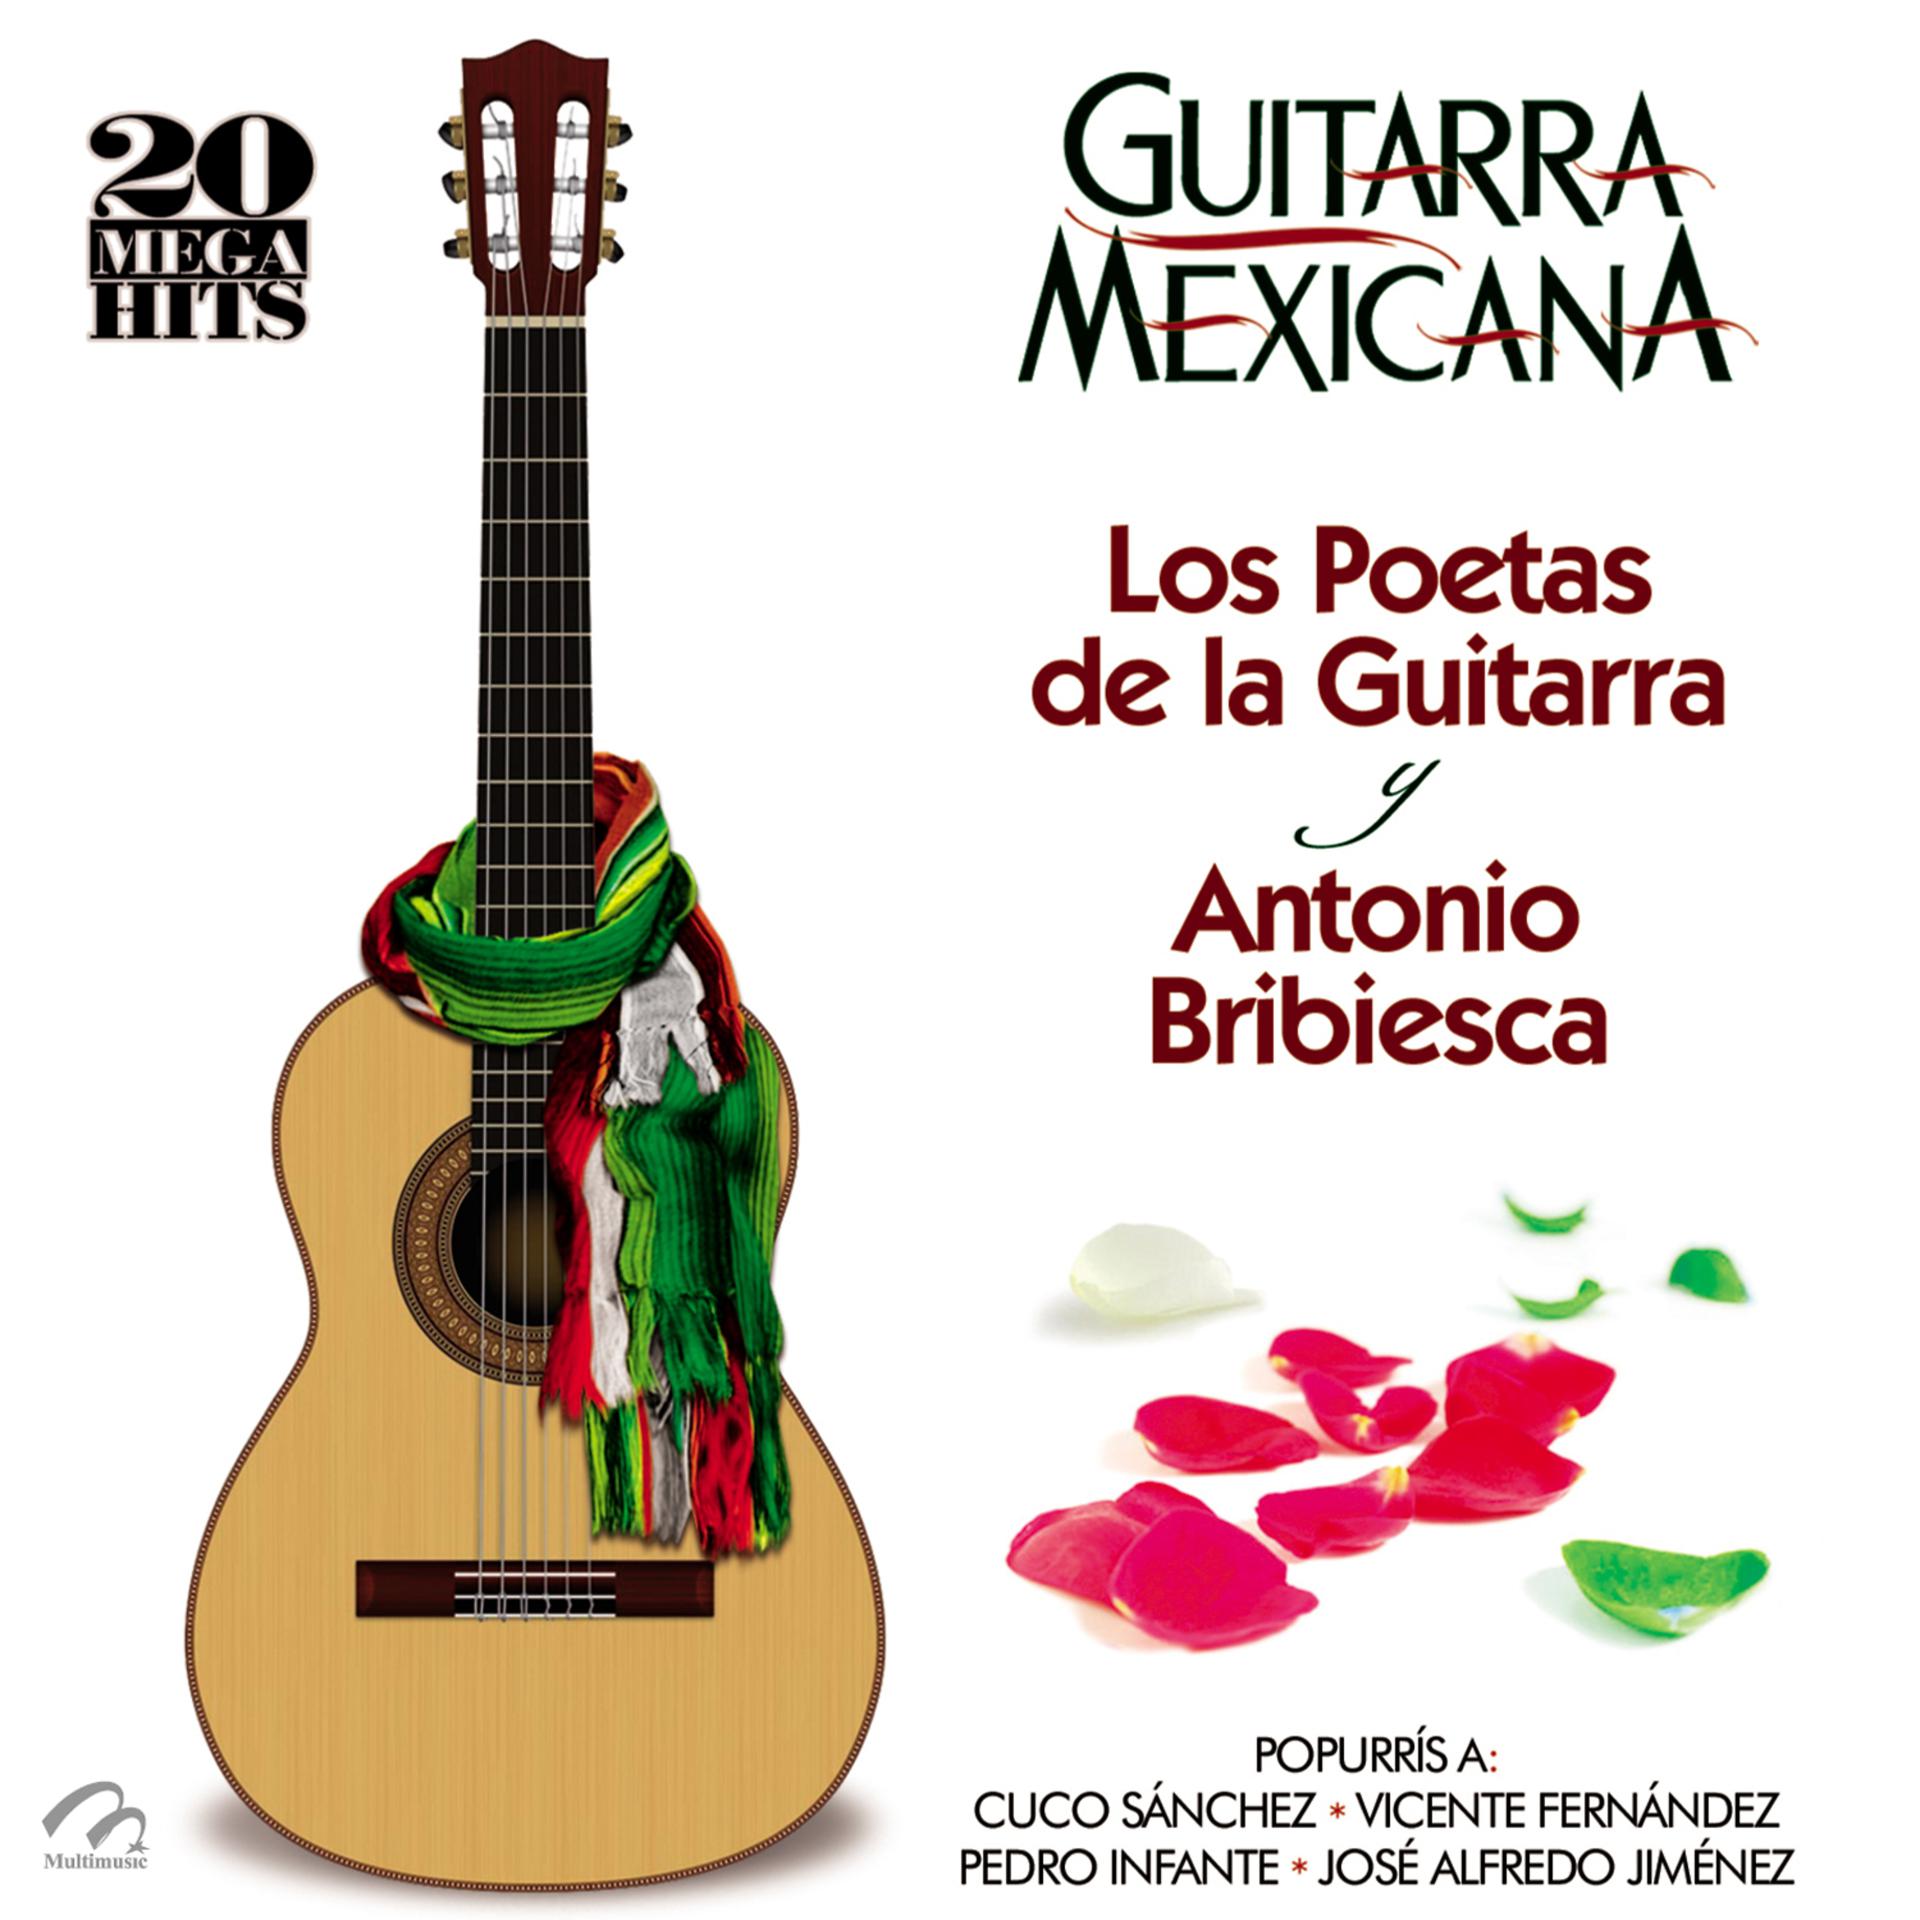 Постер альбома Guitarra Mexicana (20 Mega Hits) Los Poetas de la Guitarra y Antonio Bribiesca